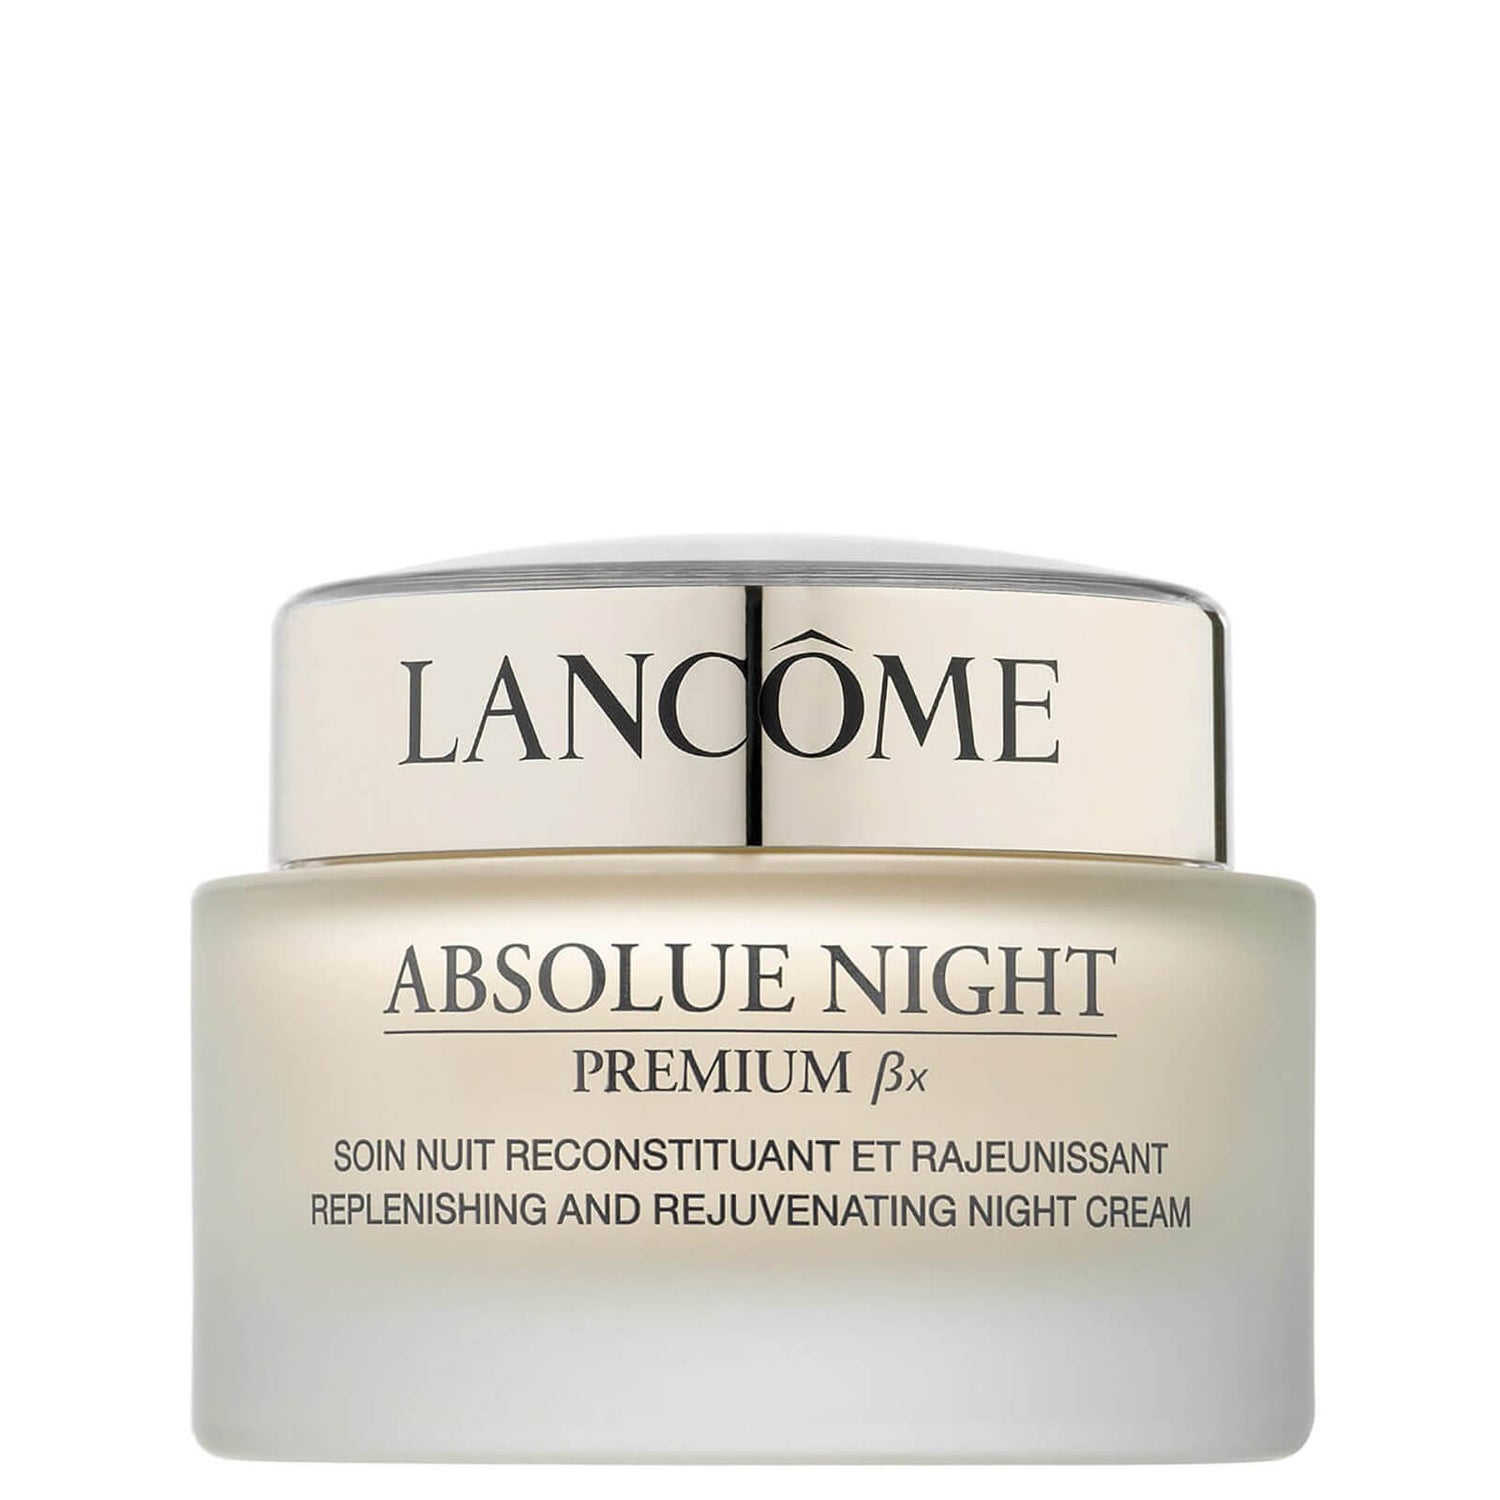 Lancôme Absolue Nuit Premium BX crème de nuit (75ml)